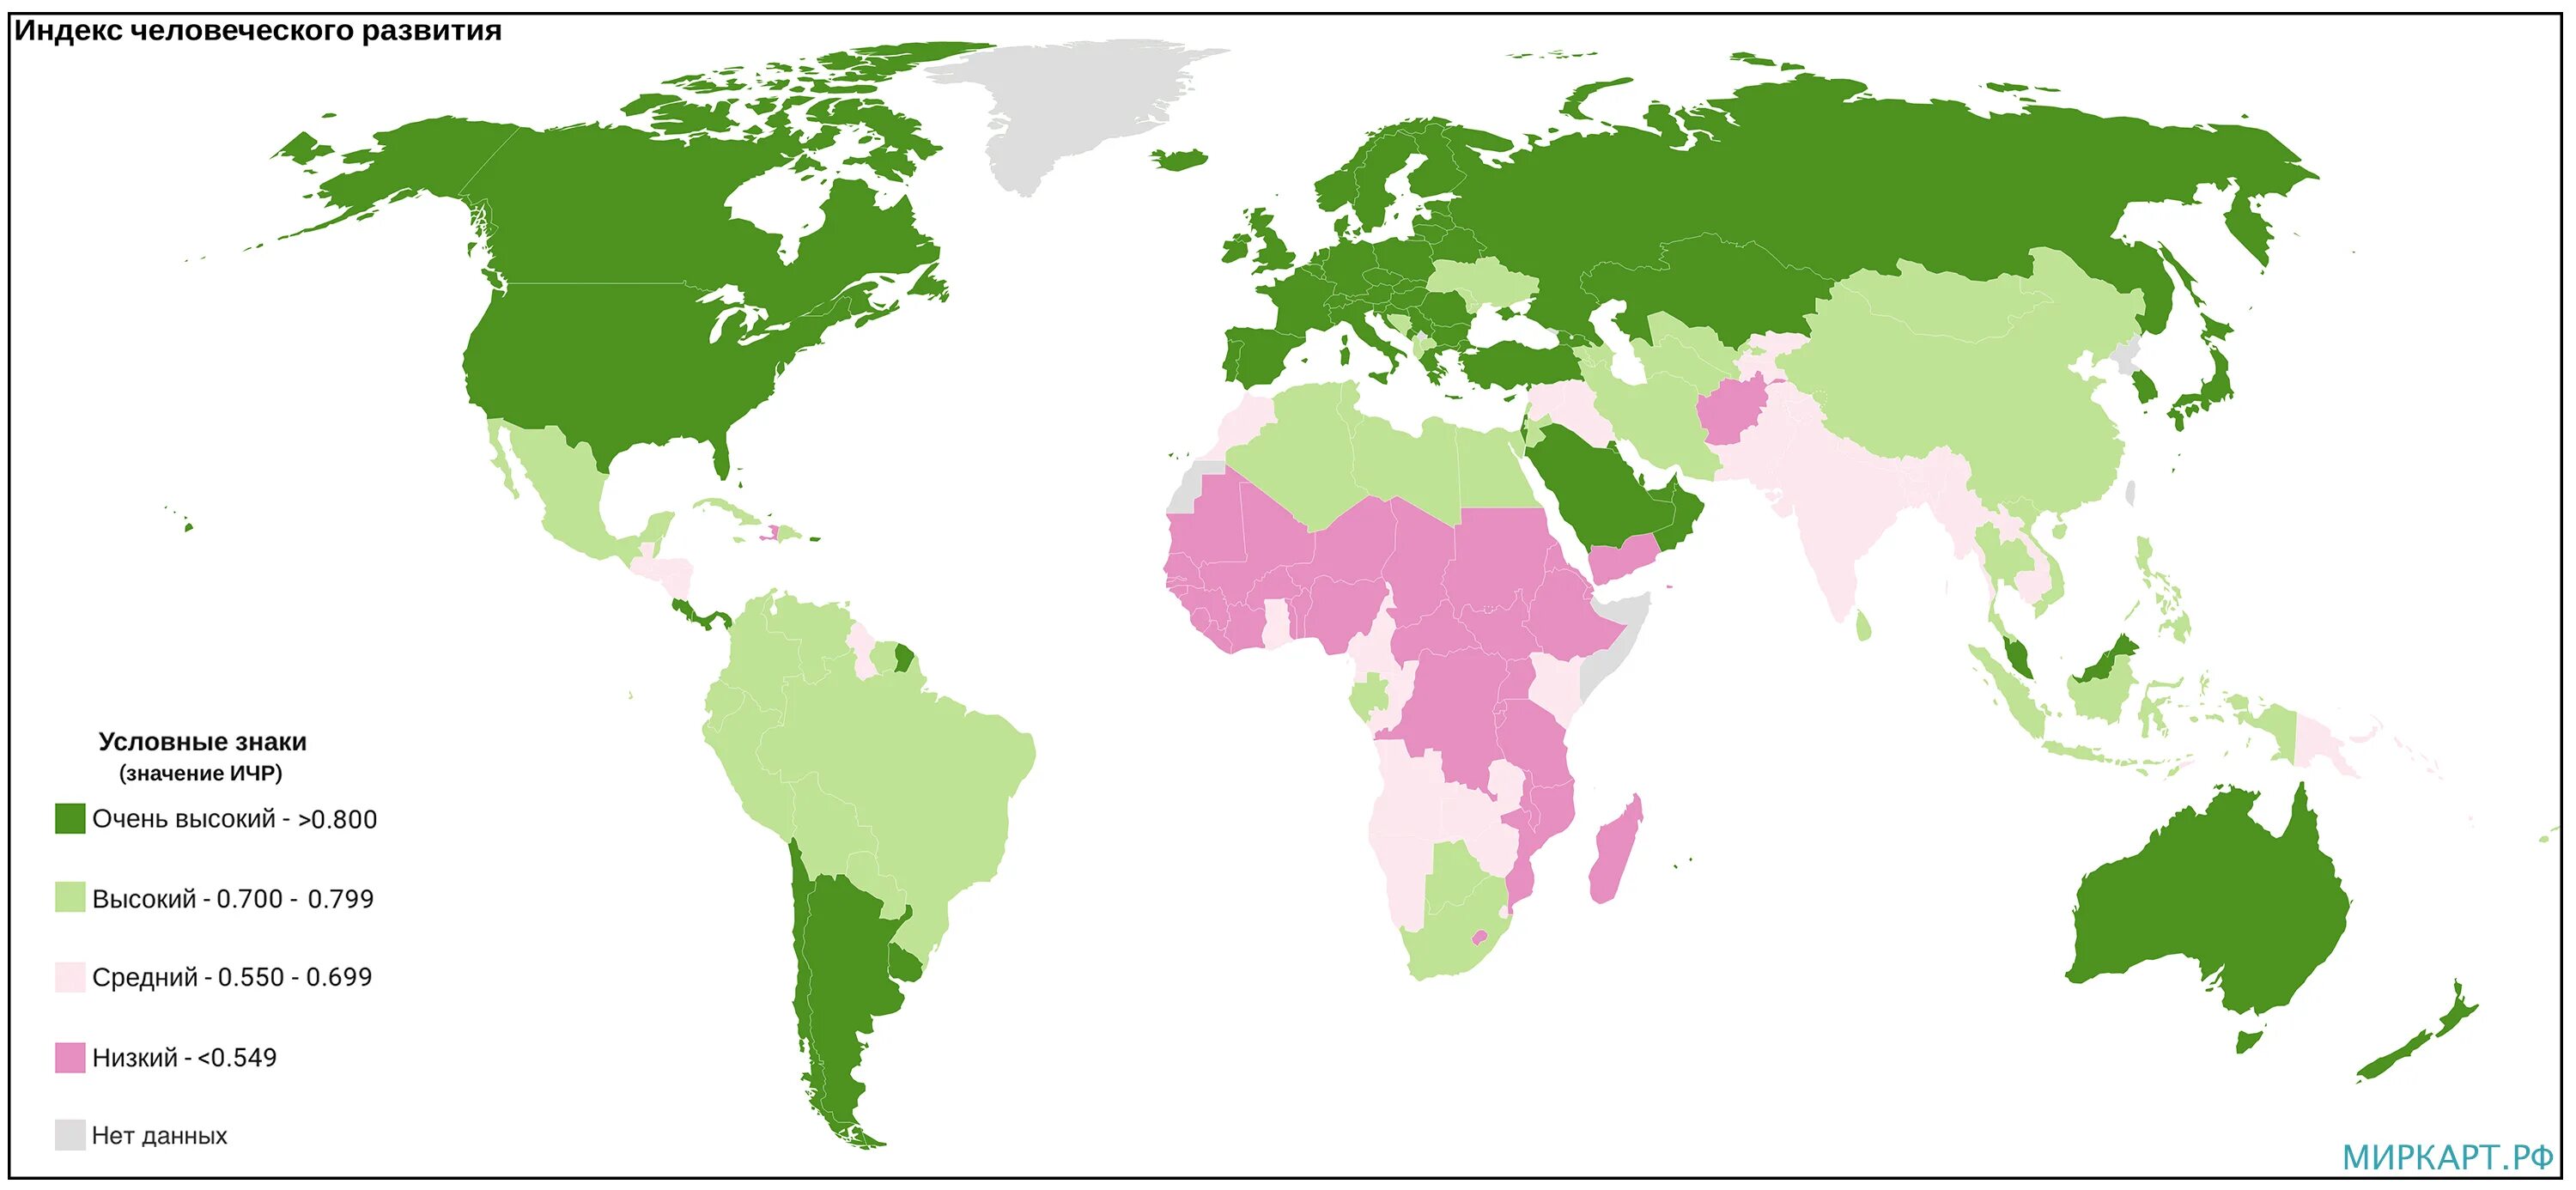 Страны крупного потенциала. Рейтинг стран по индексу человеческого развития 2021.